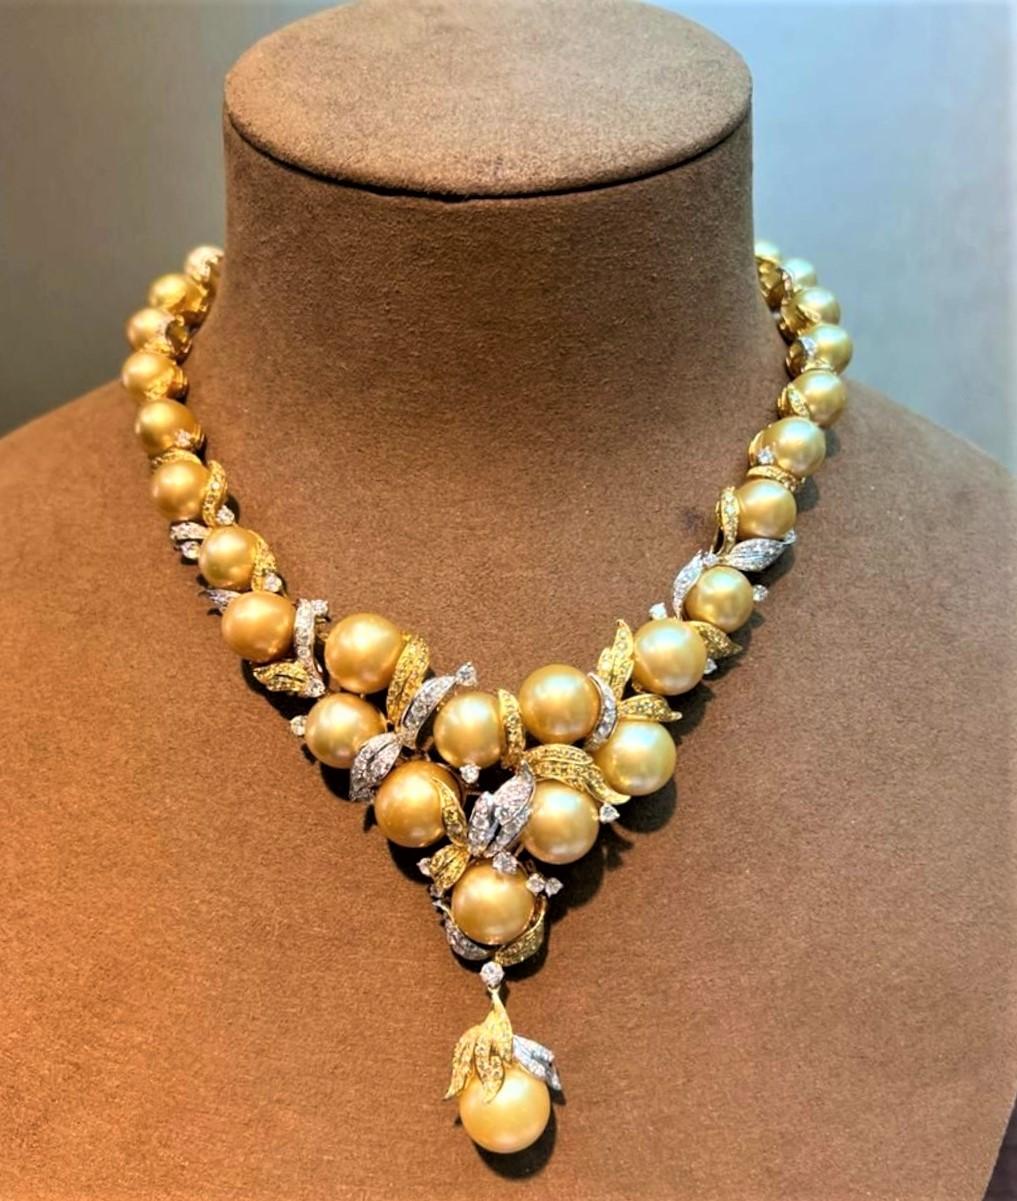 Der folgende Artikel, den wir anbieten, ist diese schöne seltene wichtige 18KT Weiß- und Gelbgold Perlen- und Diamant-Halskette. Die Halskette besteht aus wunderschönen, prächtigen, hochglänzenden 36 AA-AAA GOLDEN PRISTINE SOUTH SEA PEARLS, die